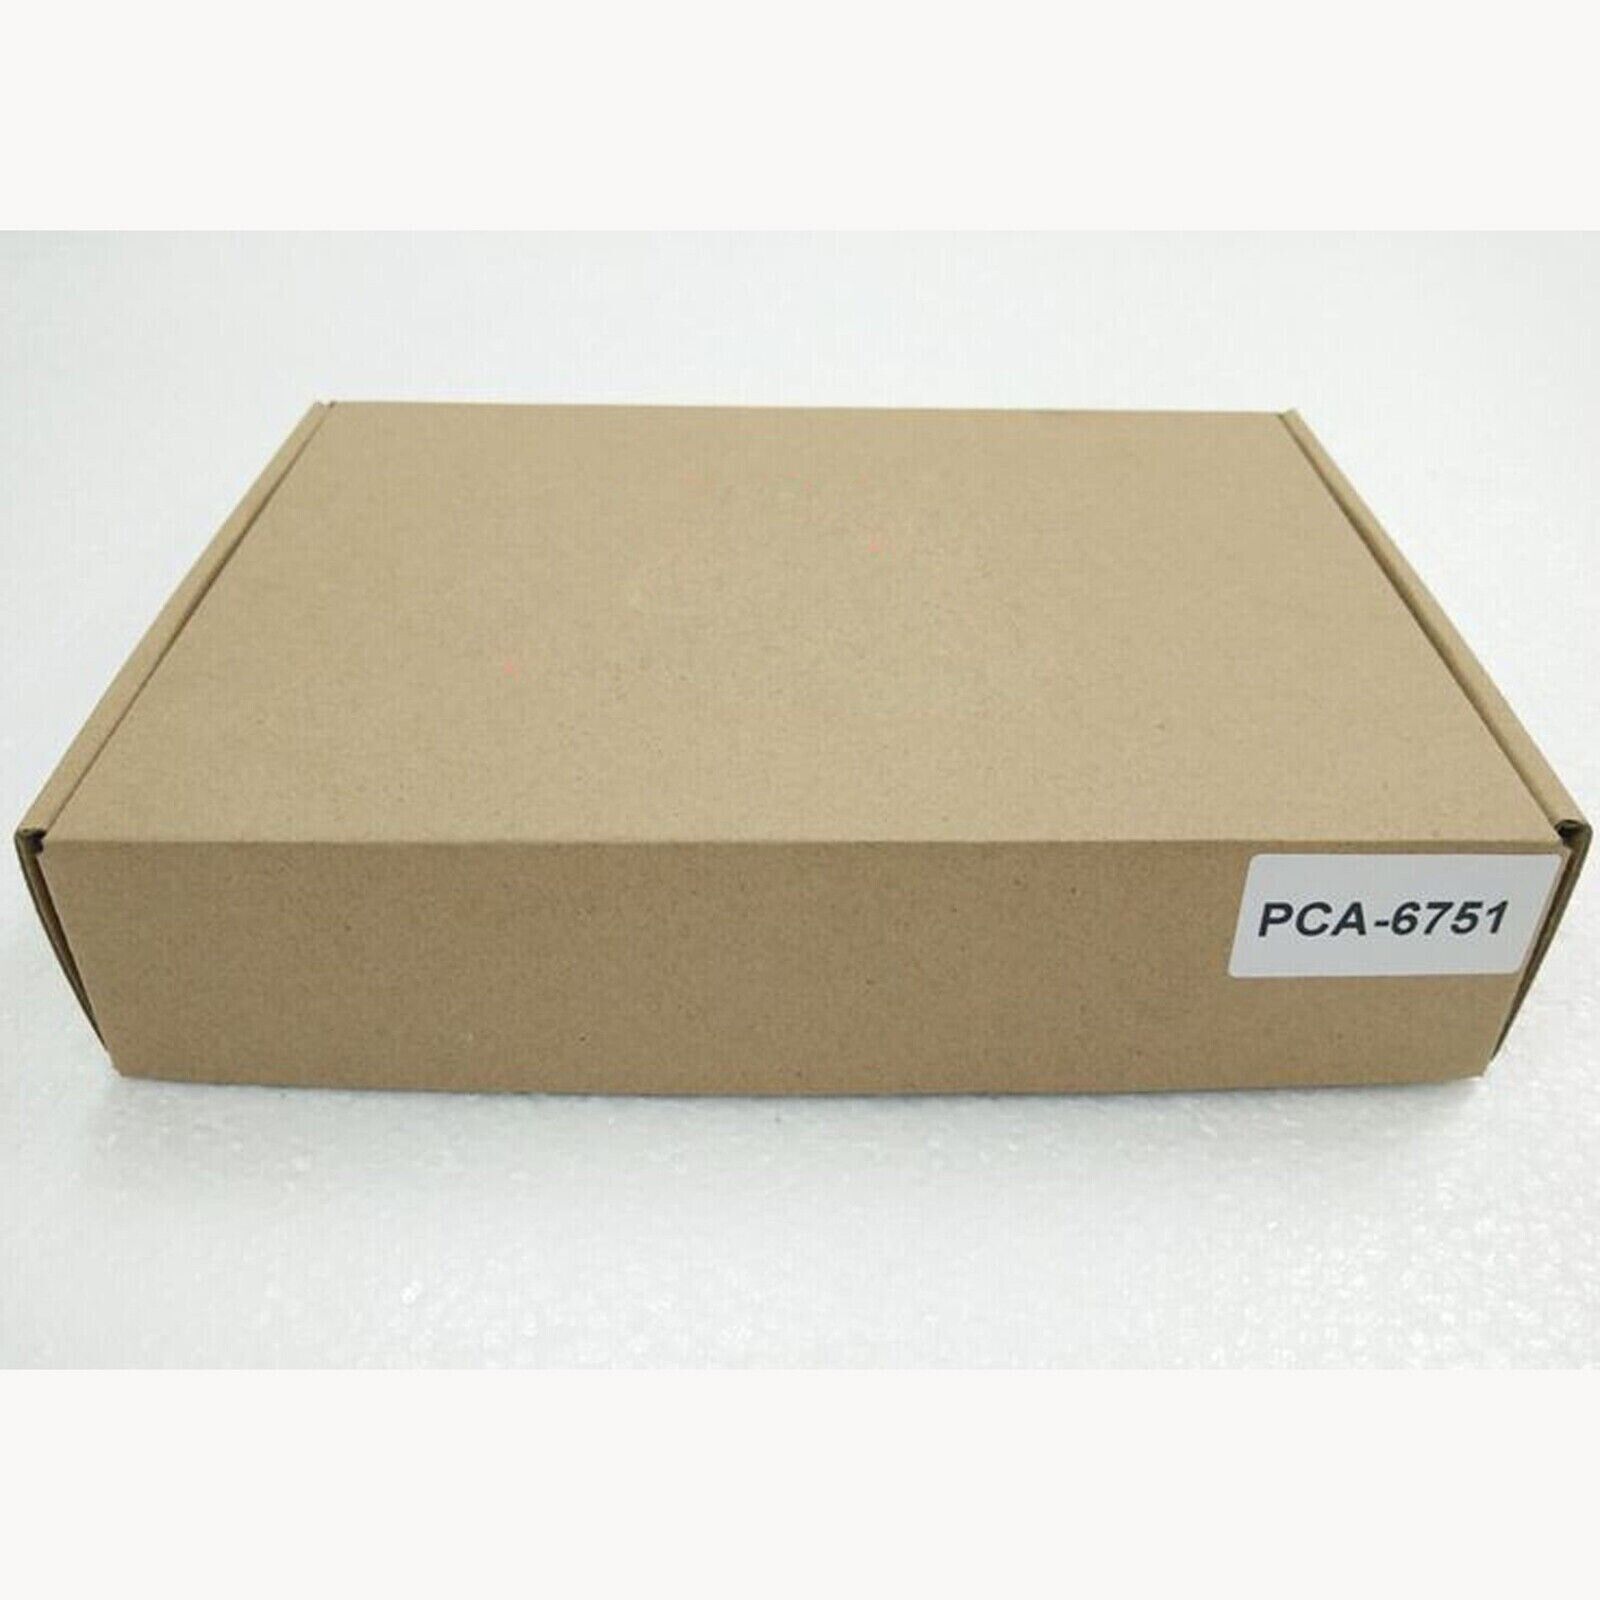 One New In Box ADVANTECH PCA-6751 Main Board PCB